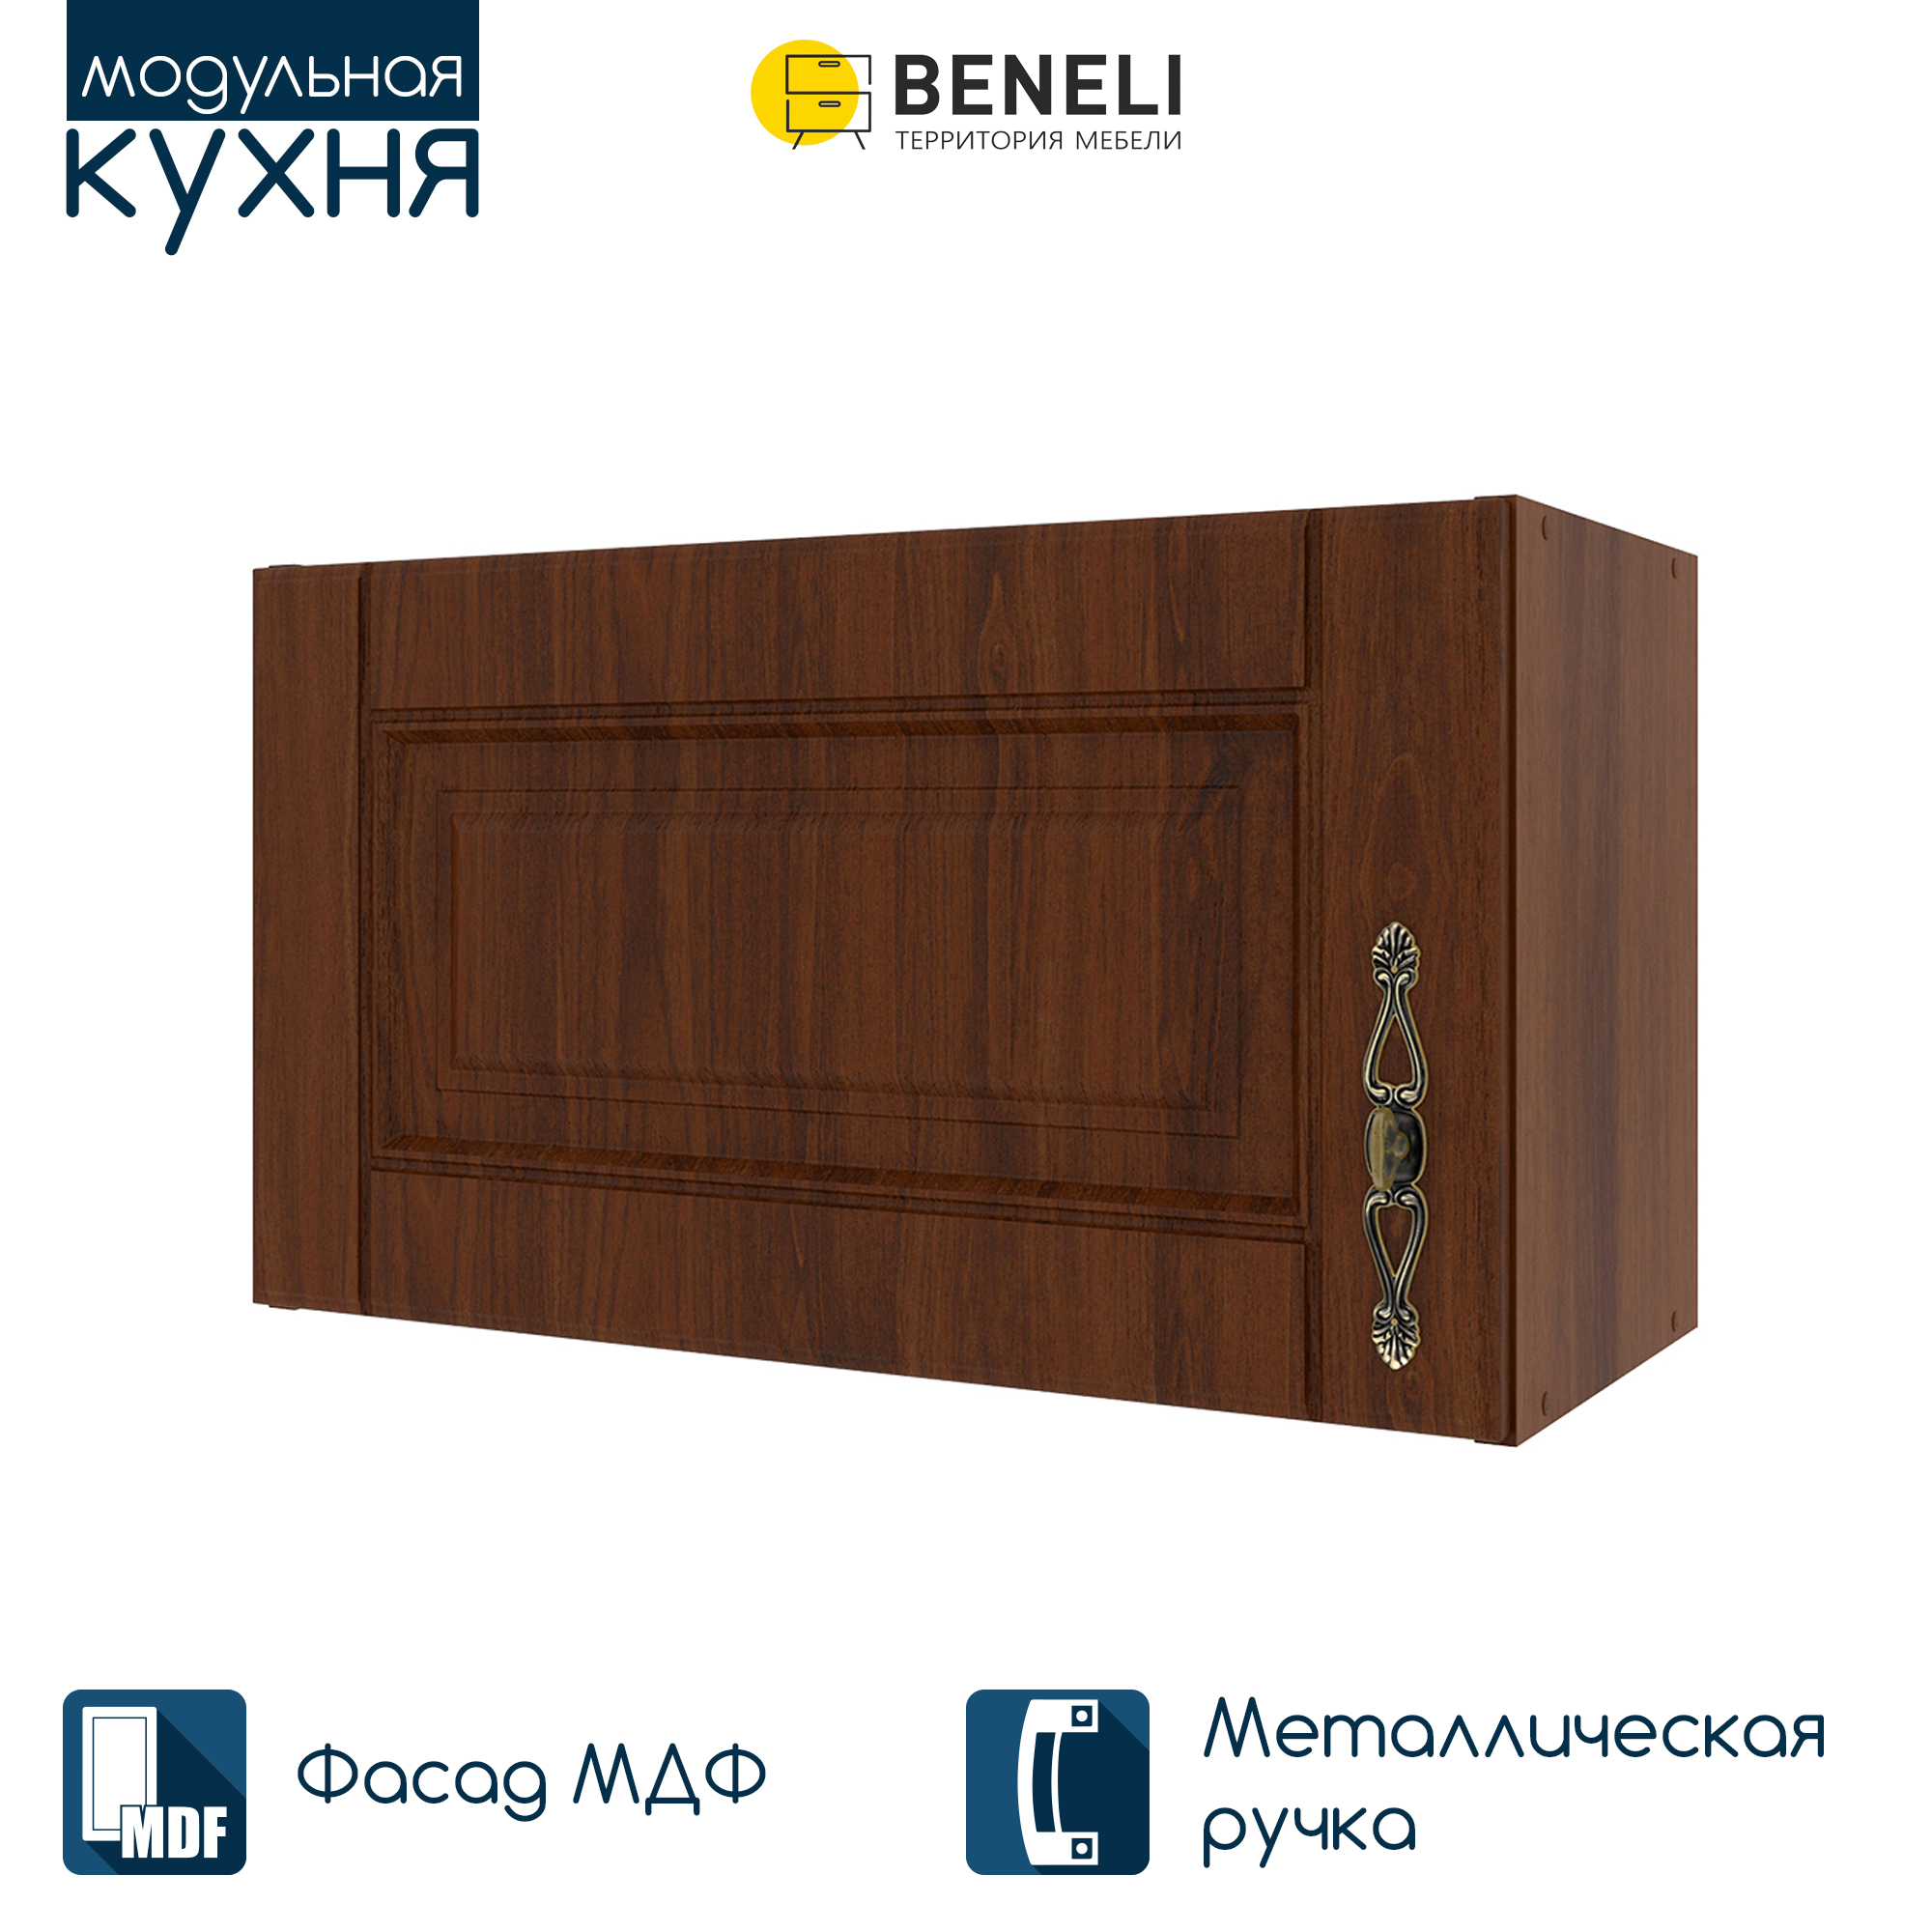 Шкаф навесной для вытяжки Beneli Ш60 с фасадом "ОРЕХ" (СТЛ.375.04) 60 см - купить в Москве, цены на Мегамаркет | 600006096210